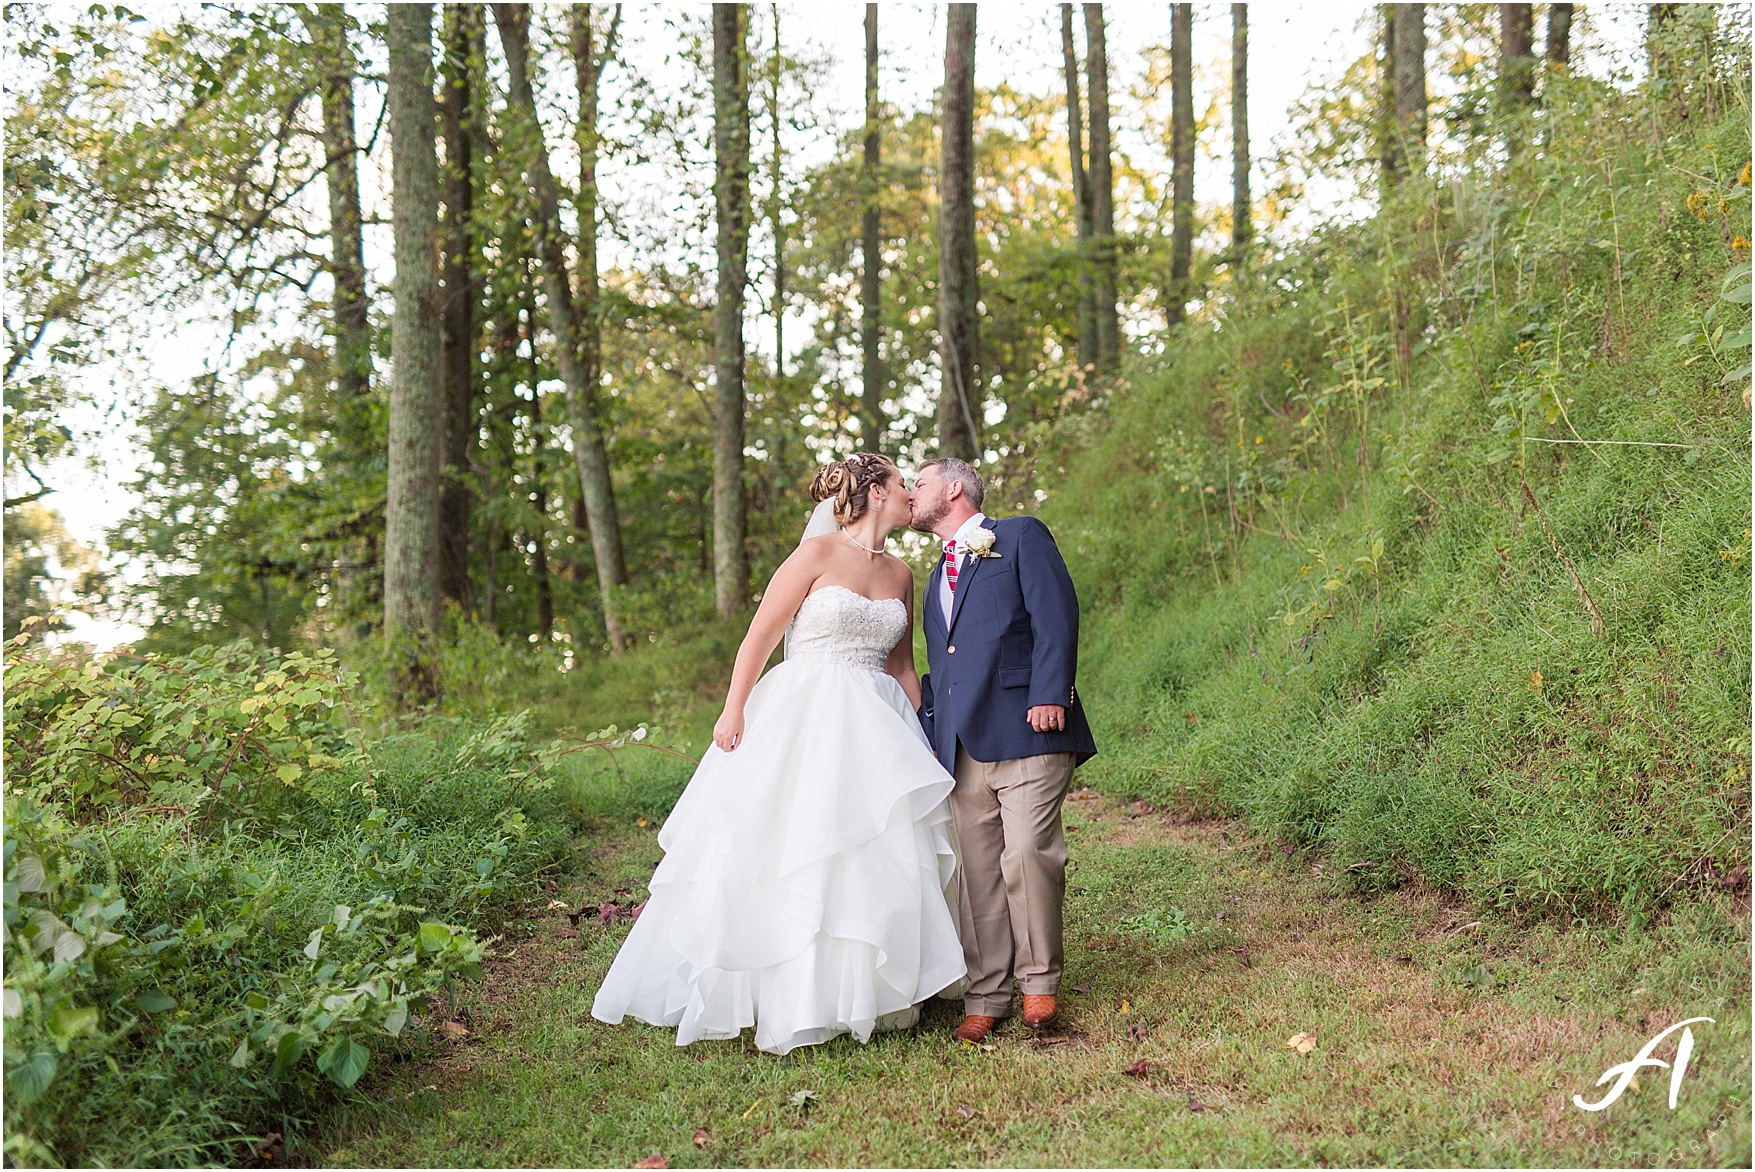 Fall Backyard Wedding in Lynchburg, Virginia || Central Virginia Wedding Photographer || Ashley Eiban Photography || www.ashleyeiban.com